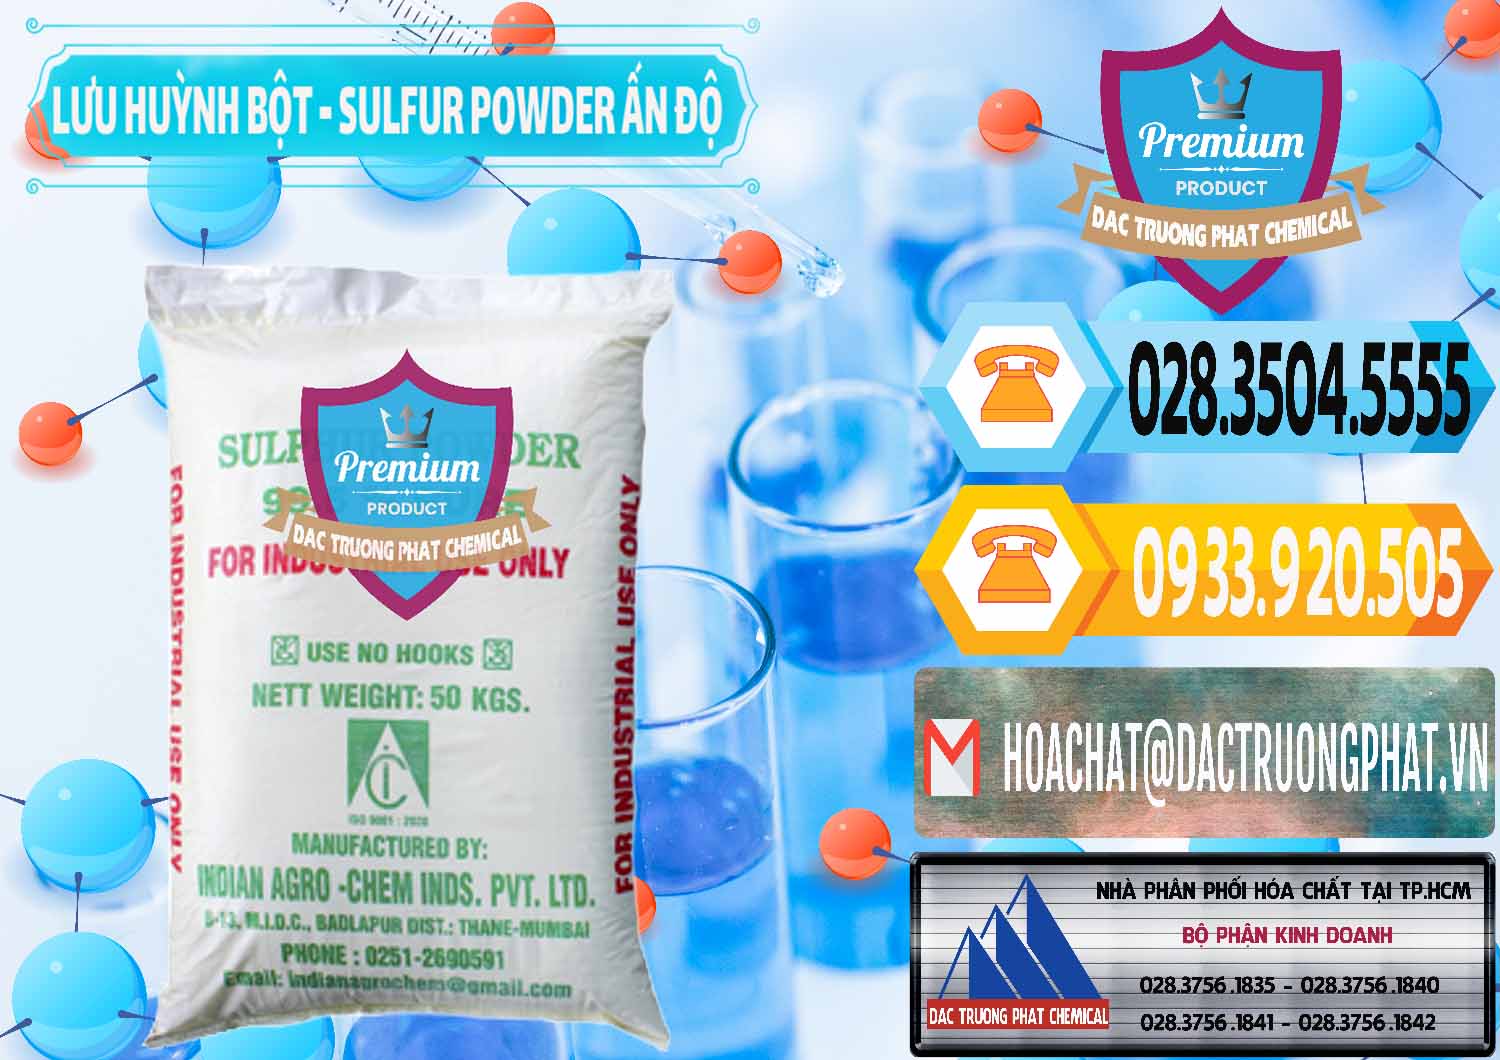 Cty chuyên bán ( phân phối ) Lưu huỳnh Bột - Sulfur Powder Ấn Độ India - 0347 - Công ty chuyên phân phối - bán hóa chất tại TP.HCM - hoachattayrua.net